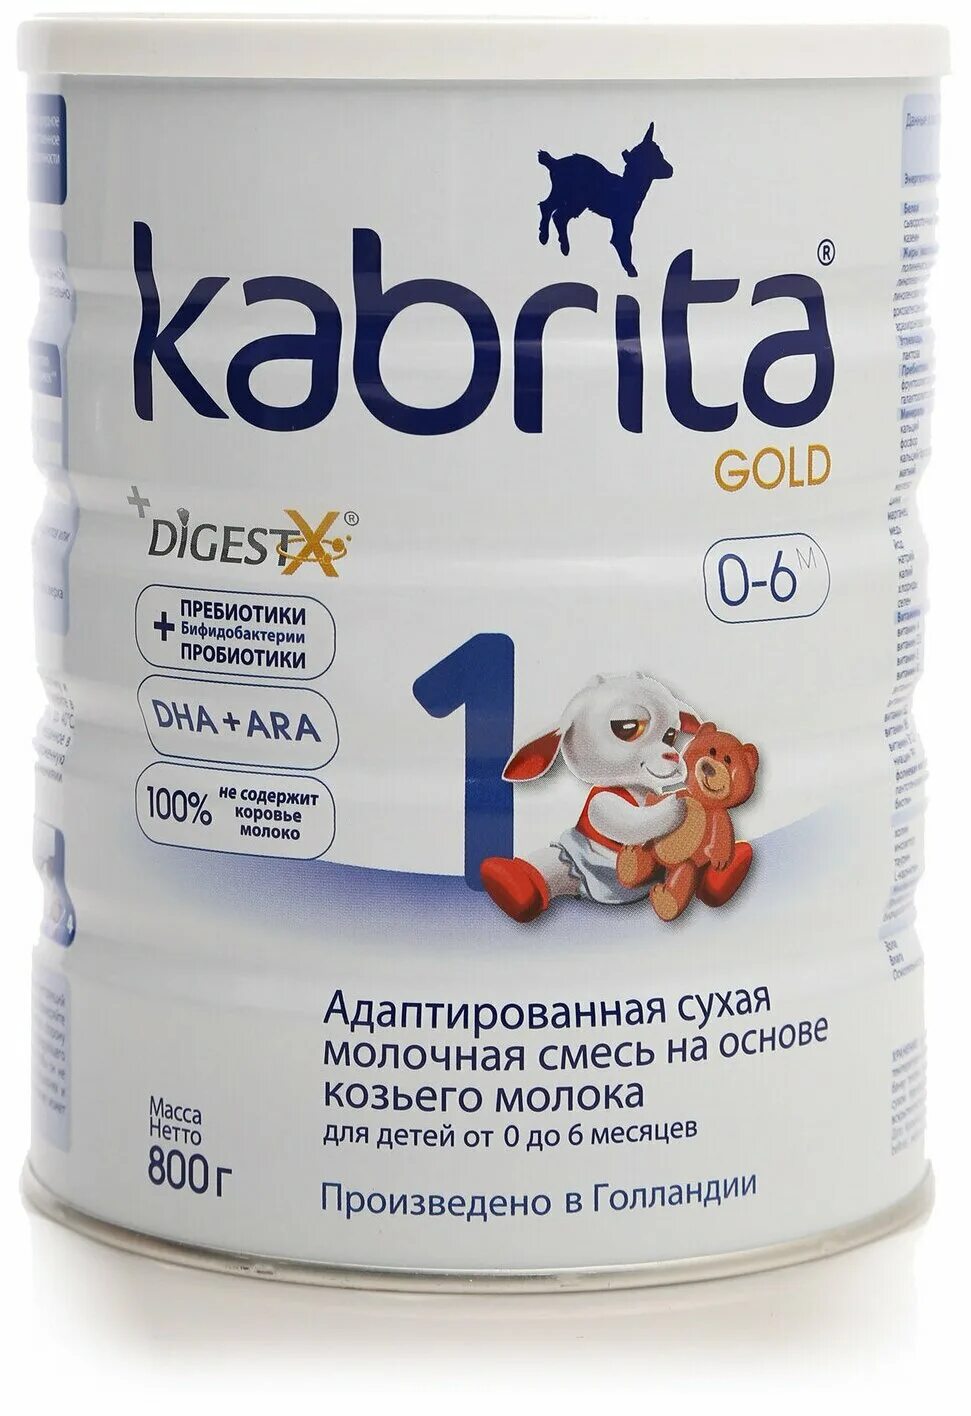 Kabrita gold 0 6. Смесь Kabrita 1 Gold (0-6 месяцев) 400 г. Кабрита 1. Смесь Кабрита с 6 месяцев. Смесь на козьем молоке для новорожденных Кабрита.